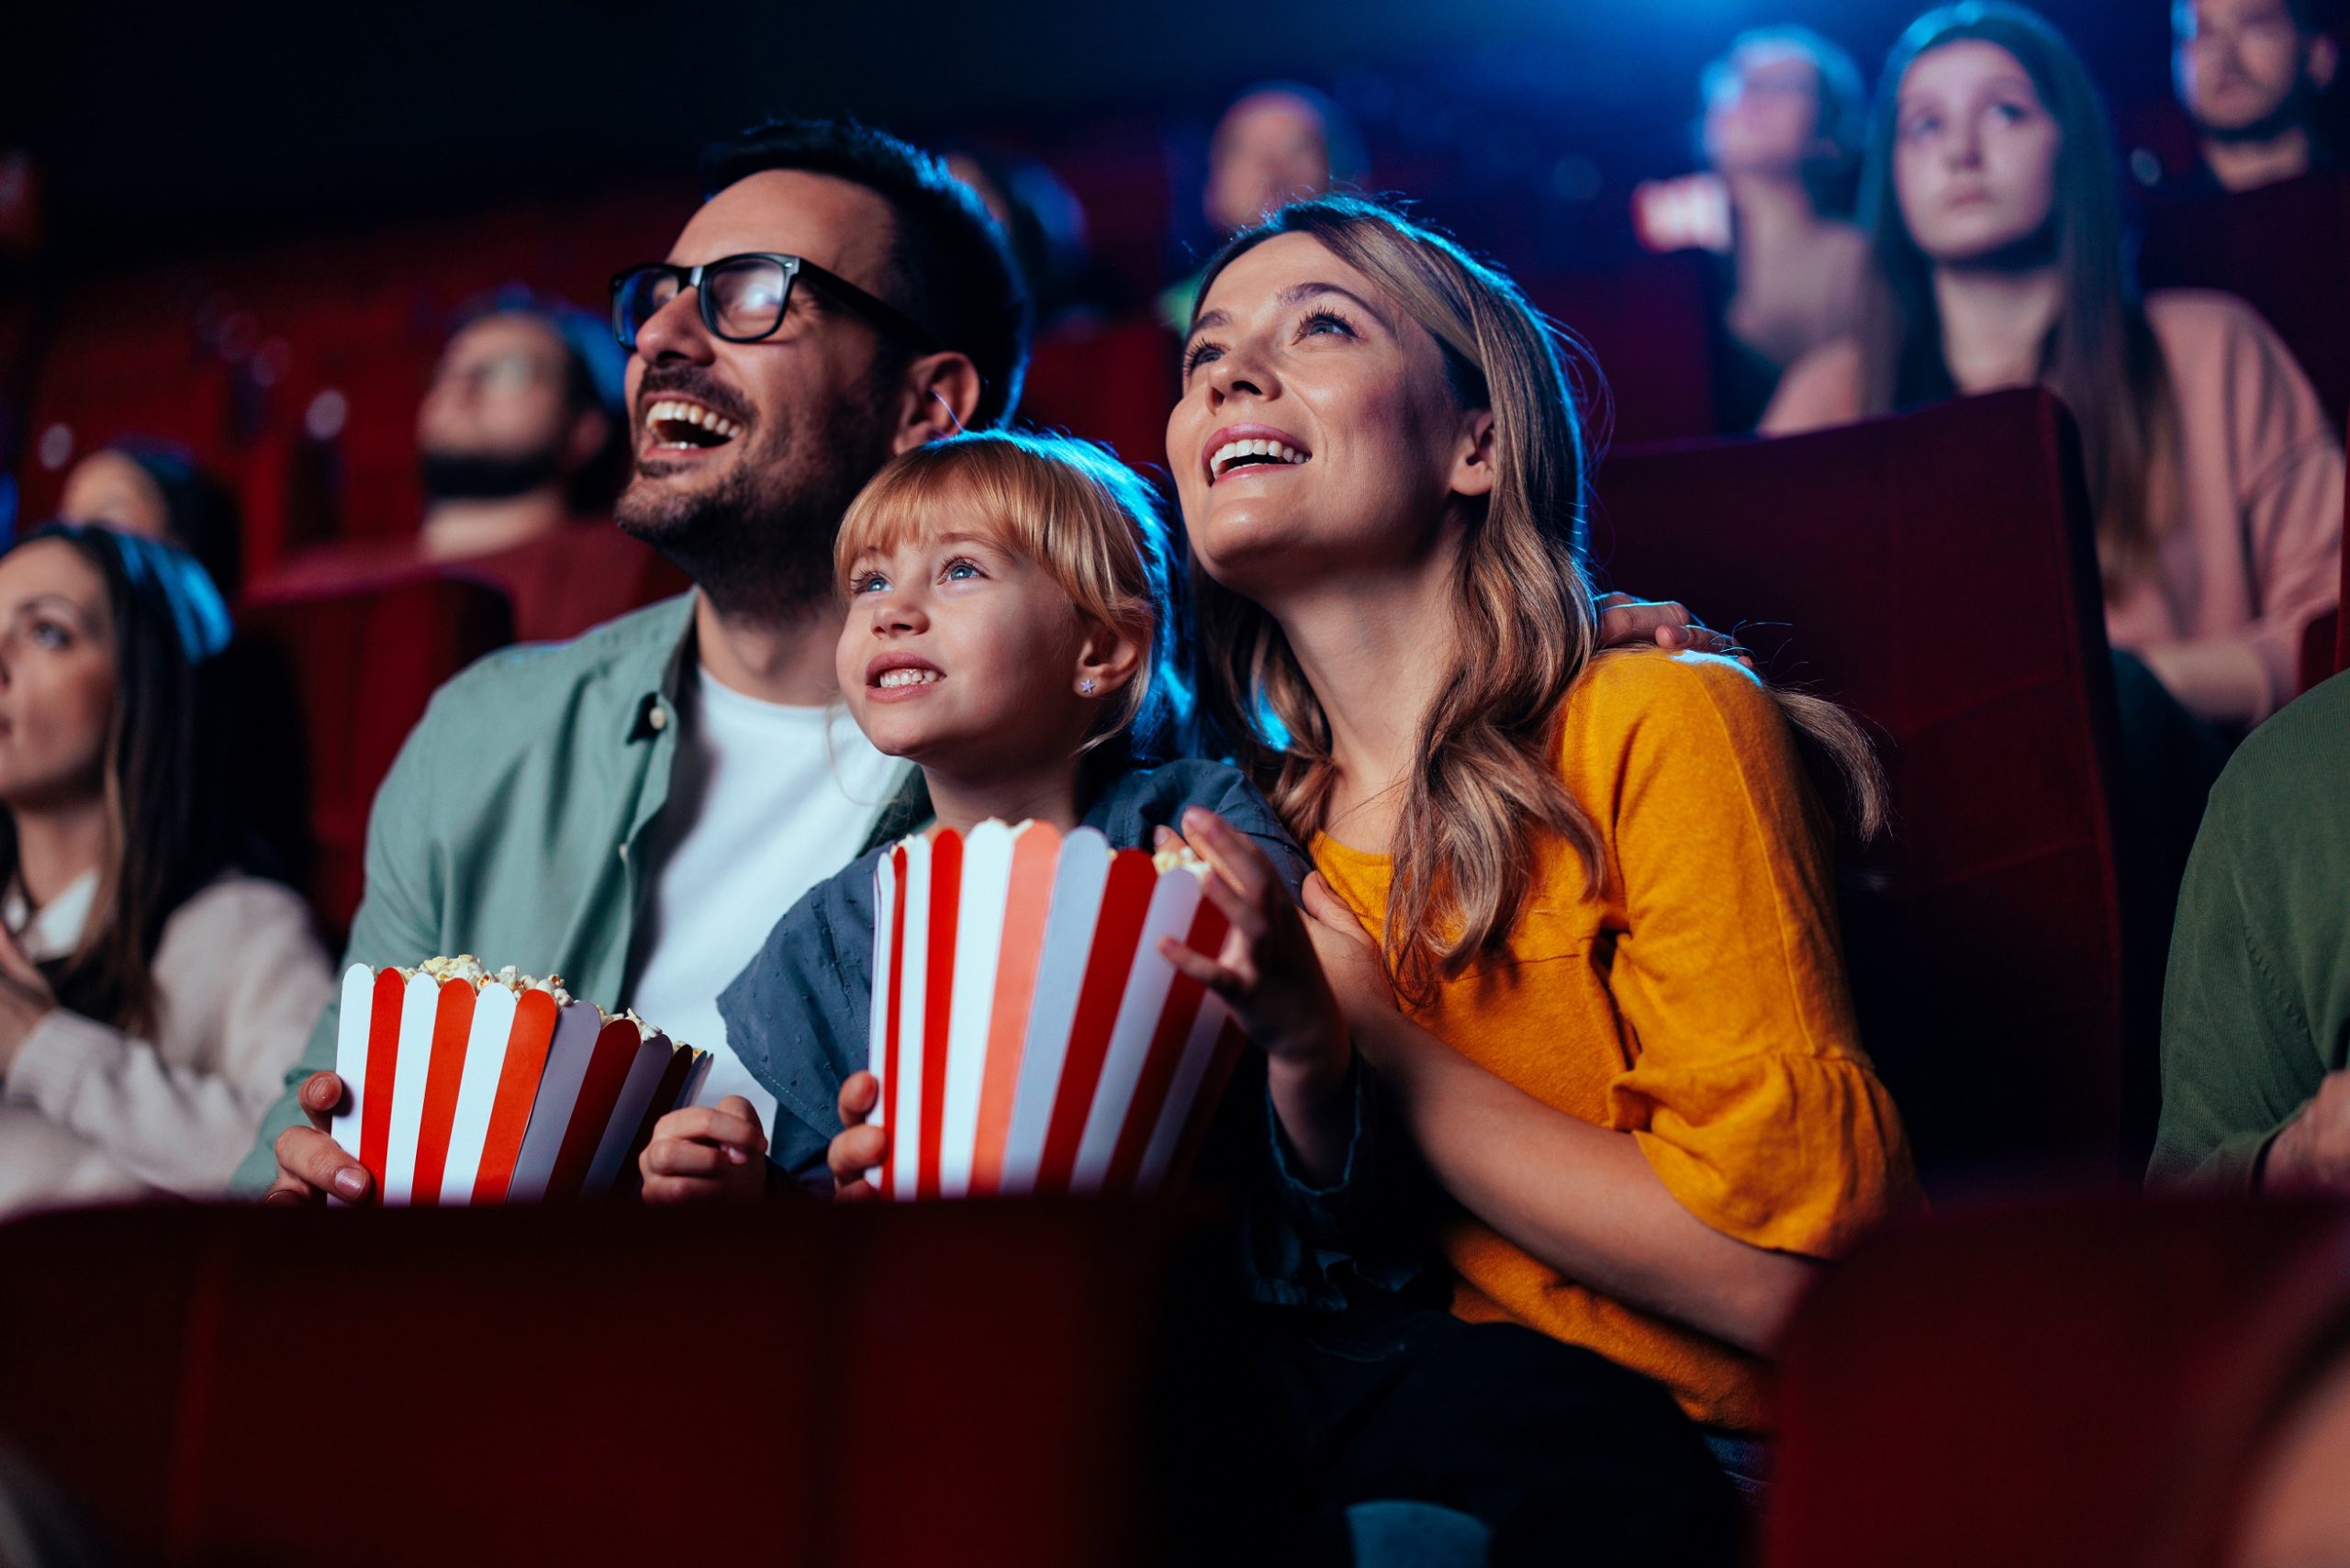 Η Γιορτή του Σινεμά: Στις 26 Οκτωβρίου βλέπουμε ταινίες με όλη την οικογένεια μόνο με 2 ευρώ!